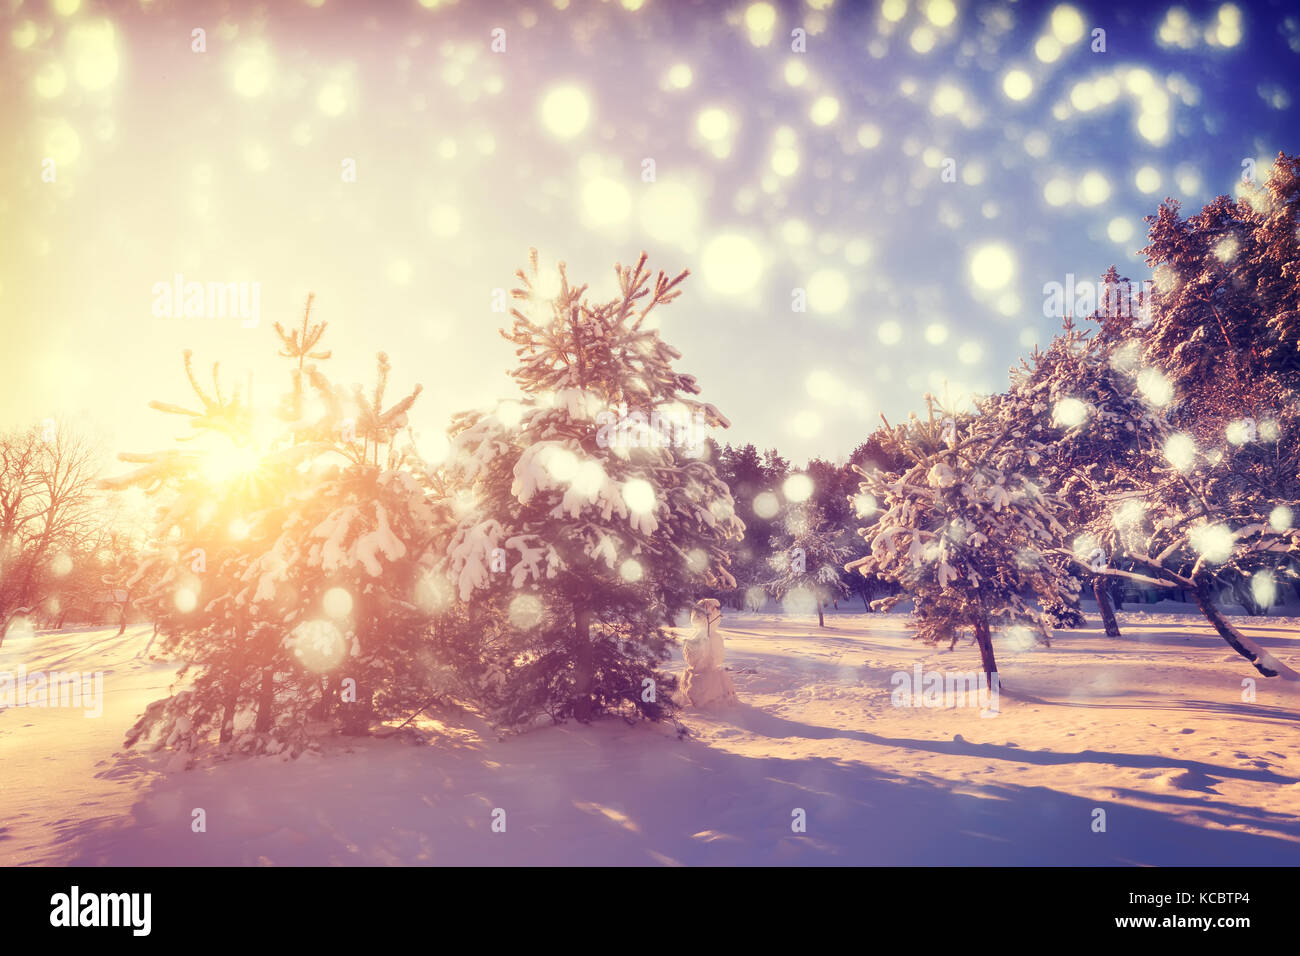 Weihnachten Morgen im Park. bunte Schneeflocken auf verschneiten Weihnachtsbäume Hintergrund. Lebendige xmas Sonnenaufgang. Schönes Neues Jahr und Weihnachten Hintergrund. Stockfoto